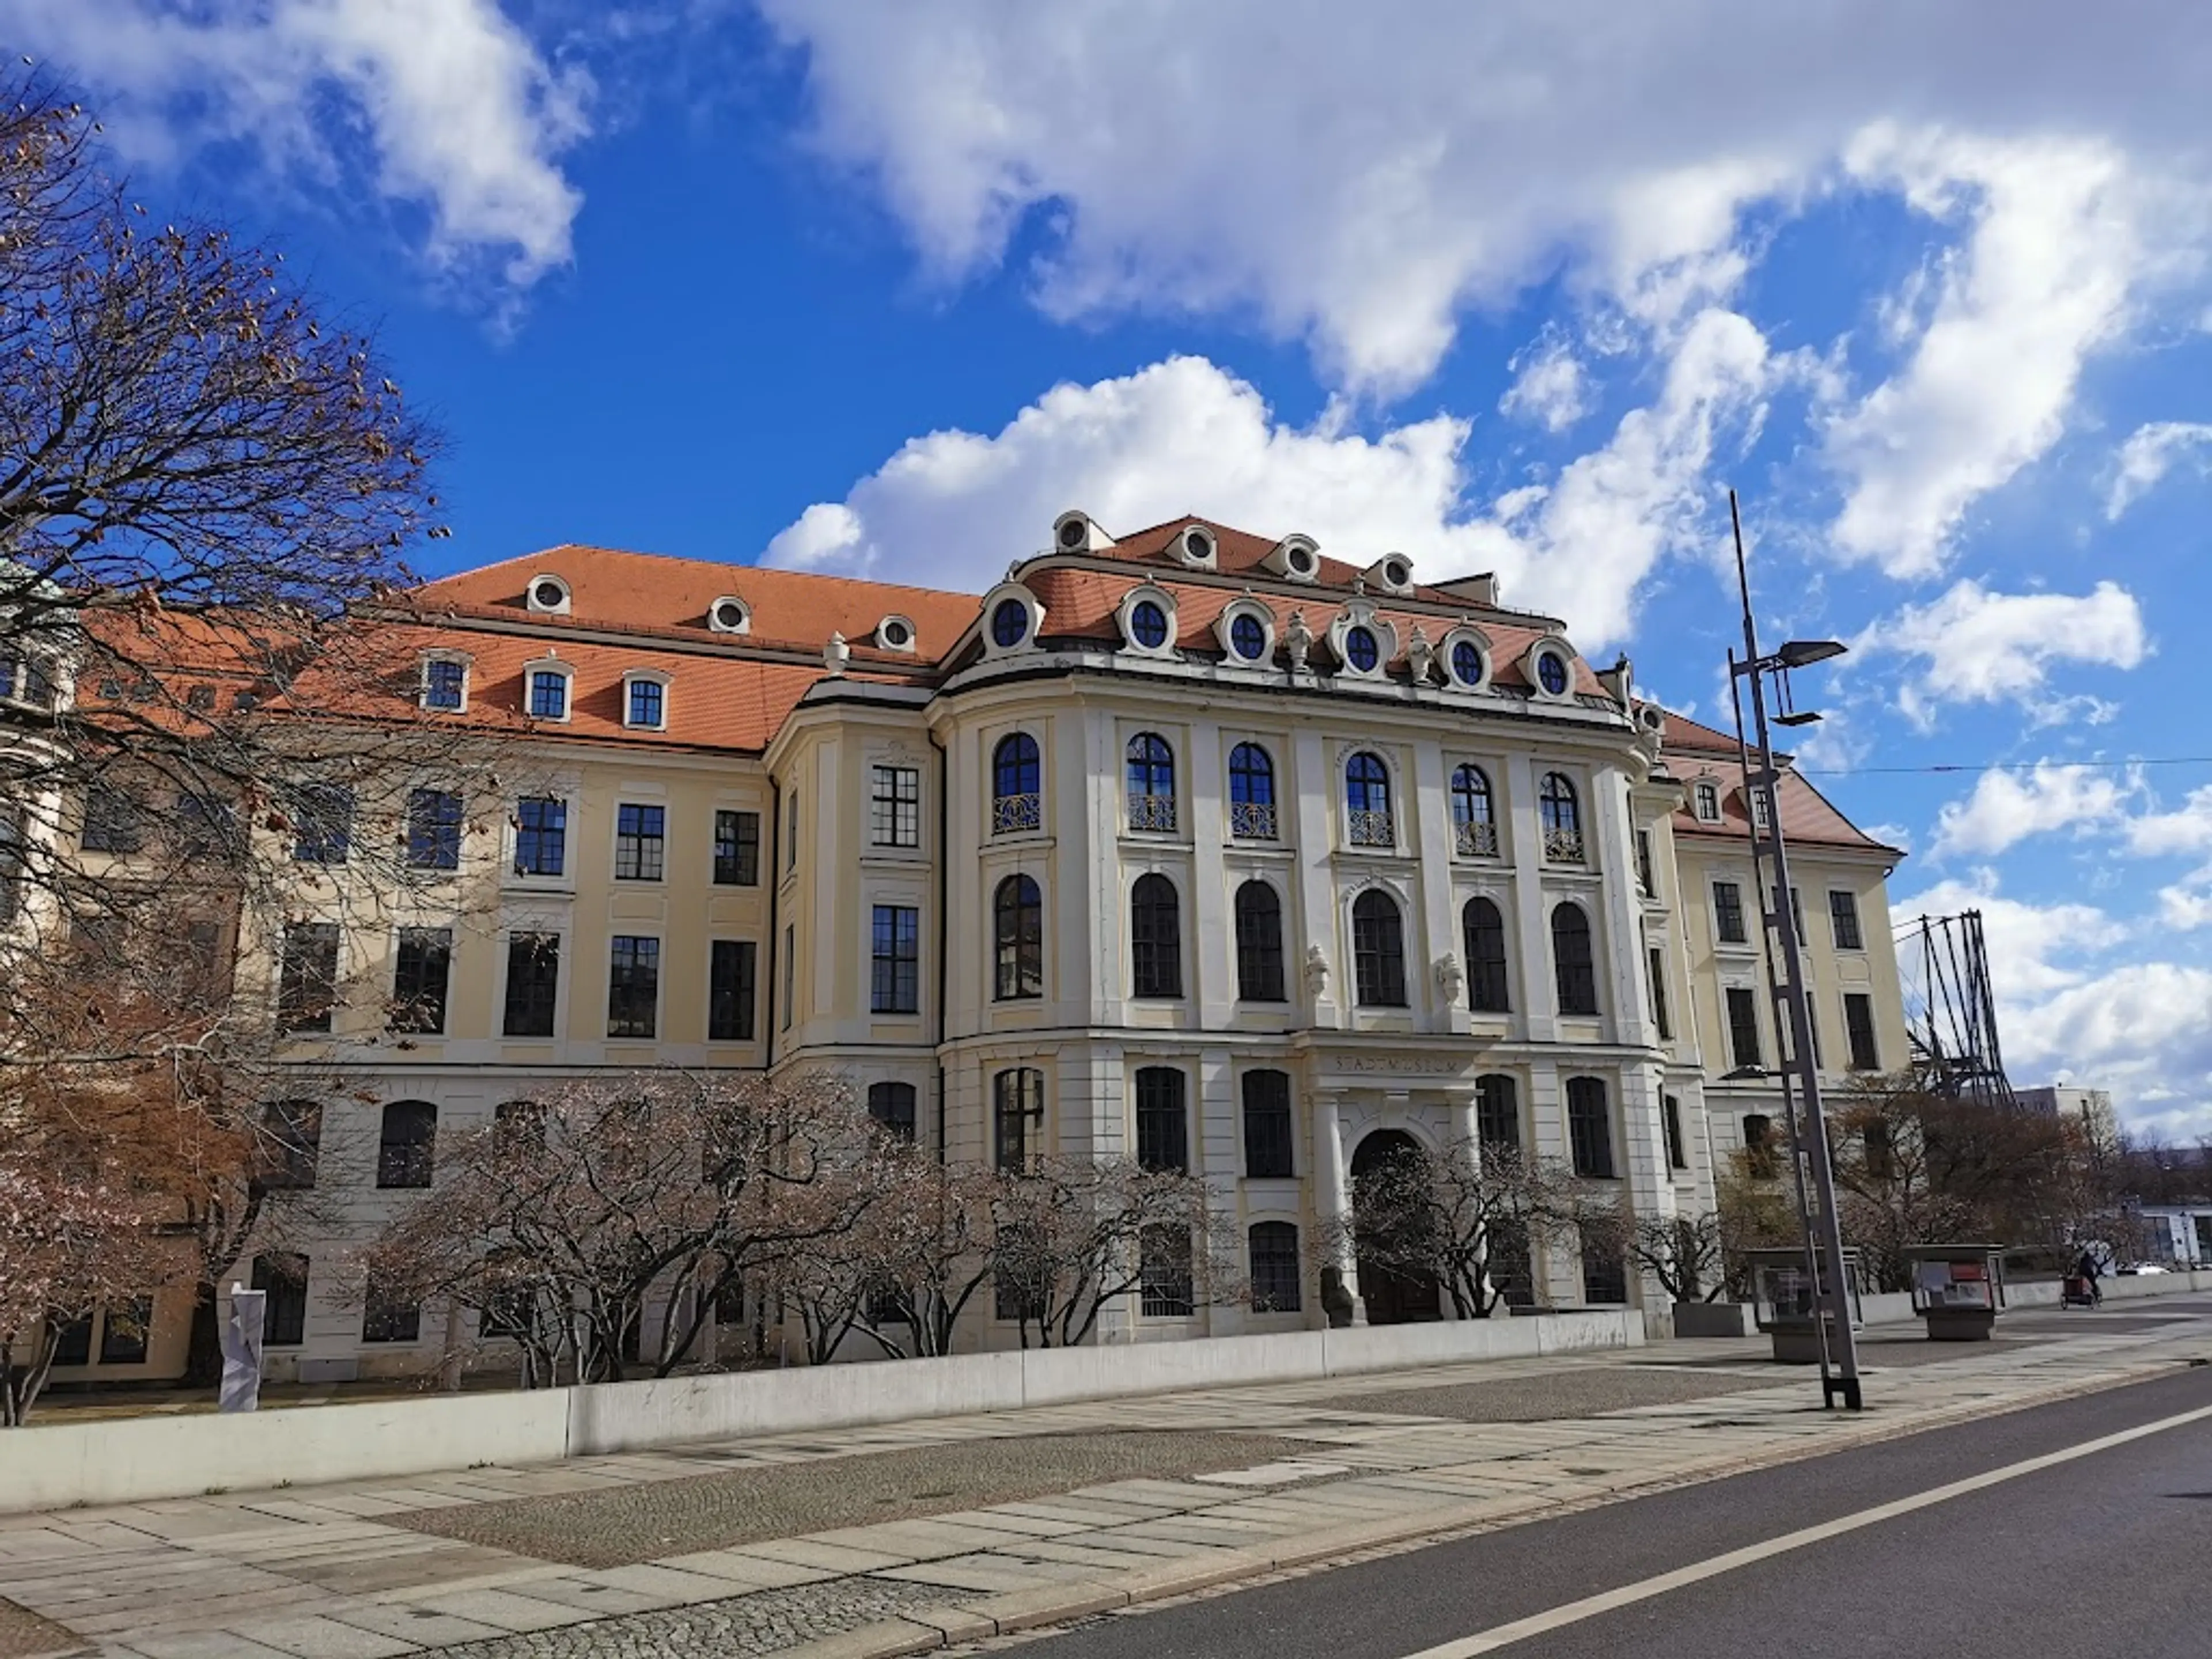 Dresden City Museum